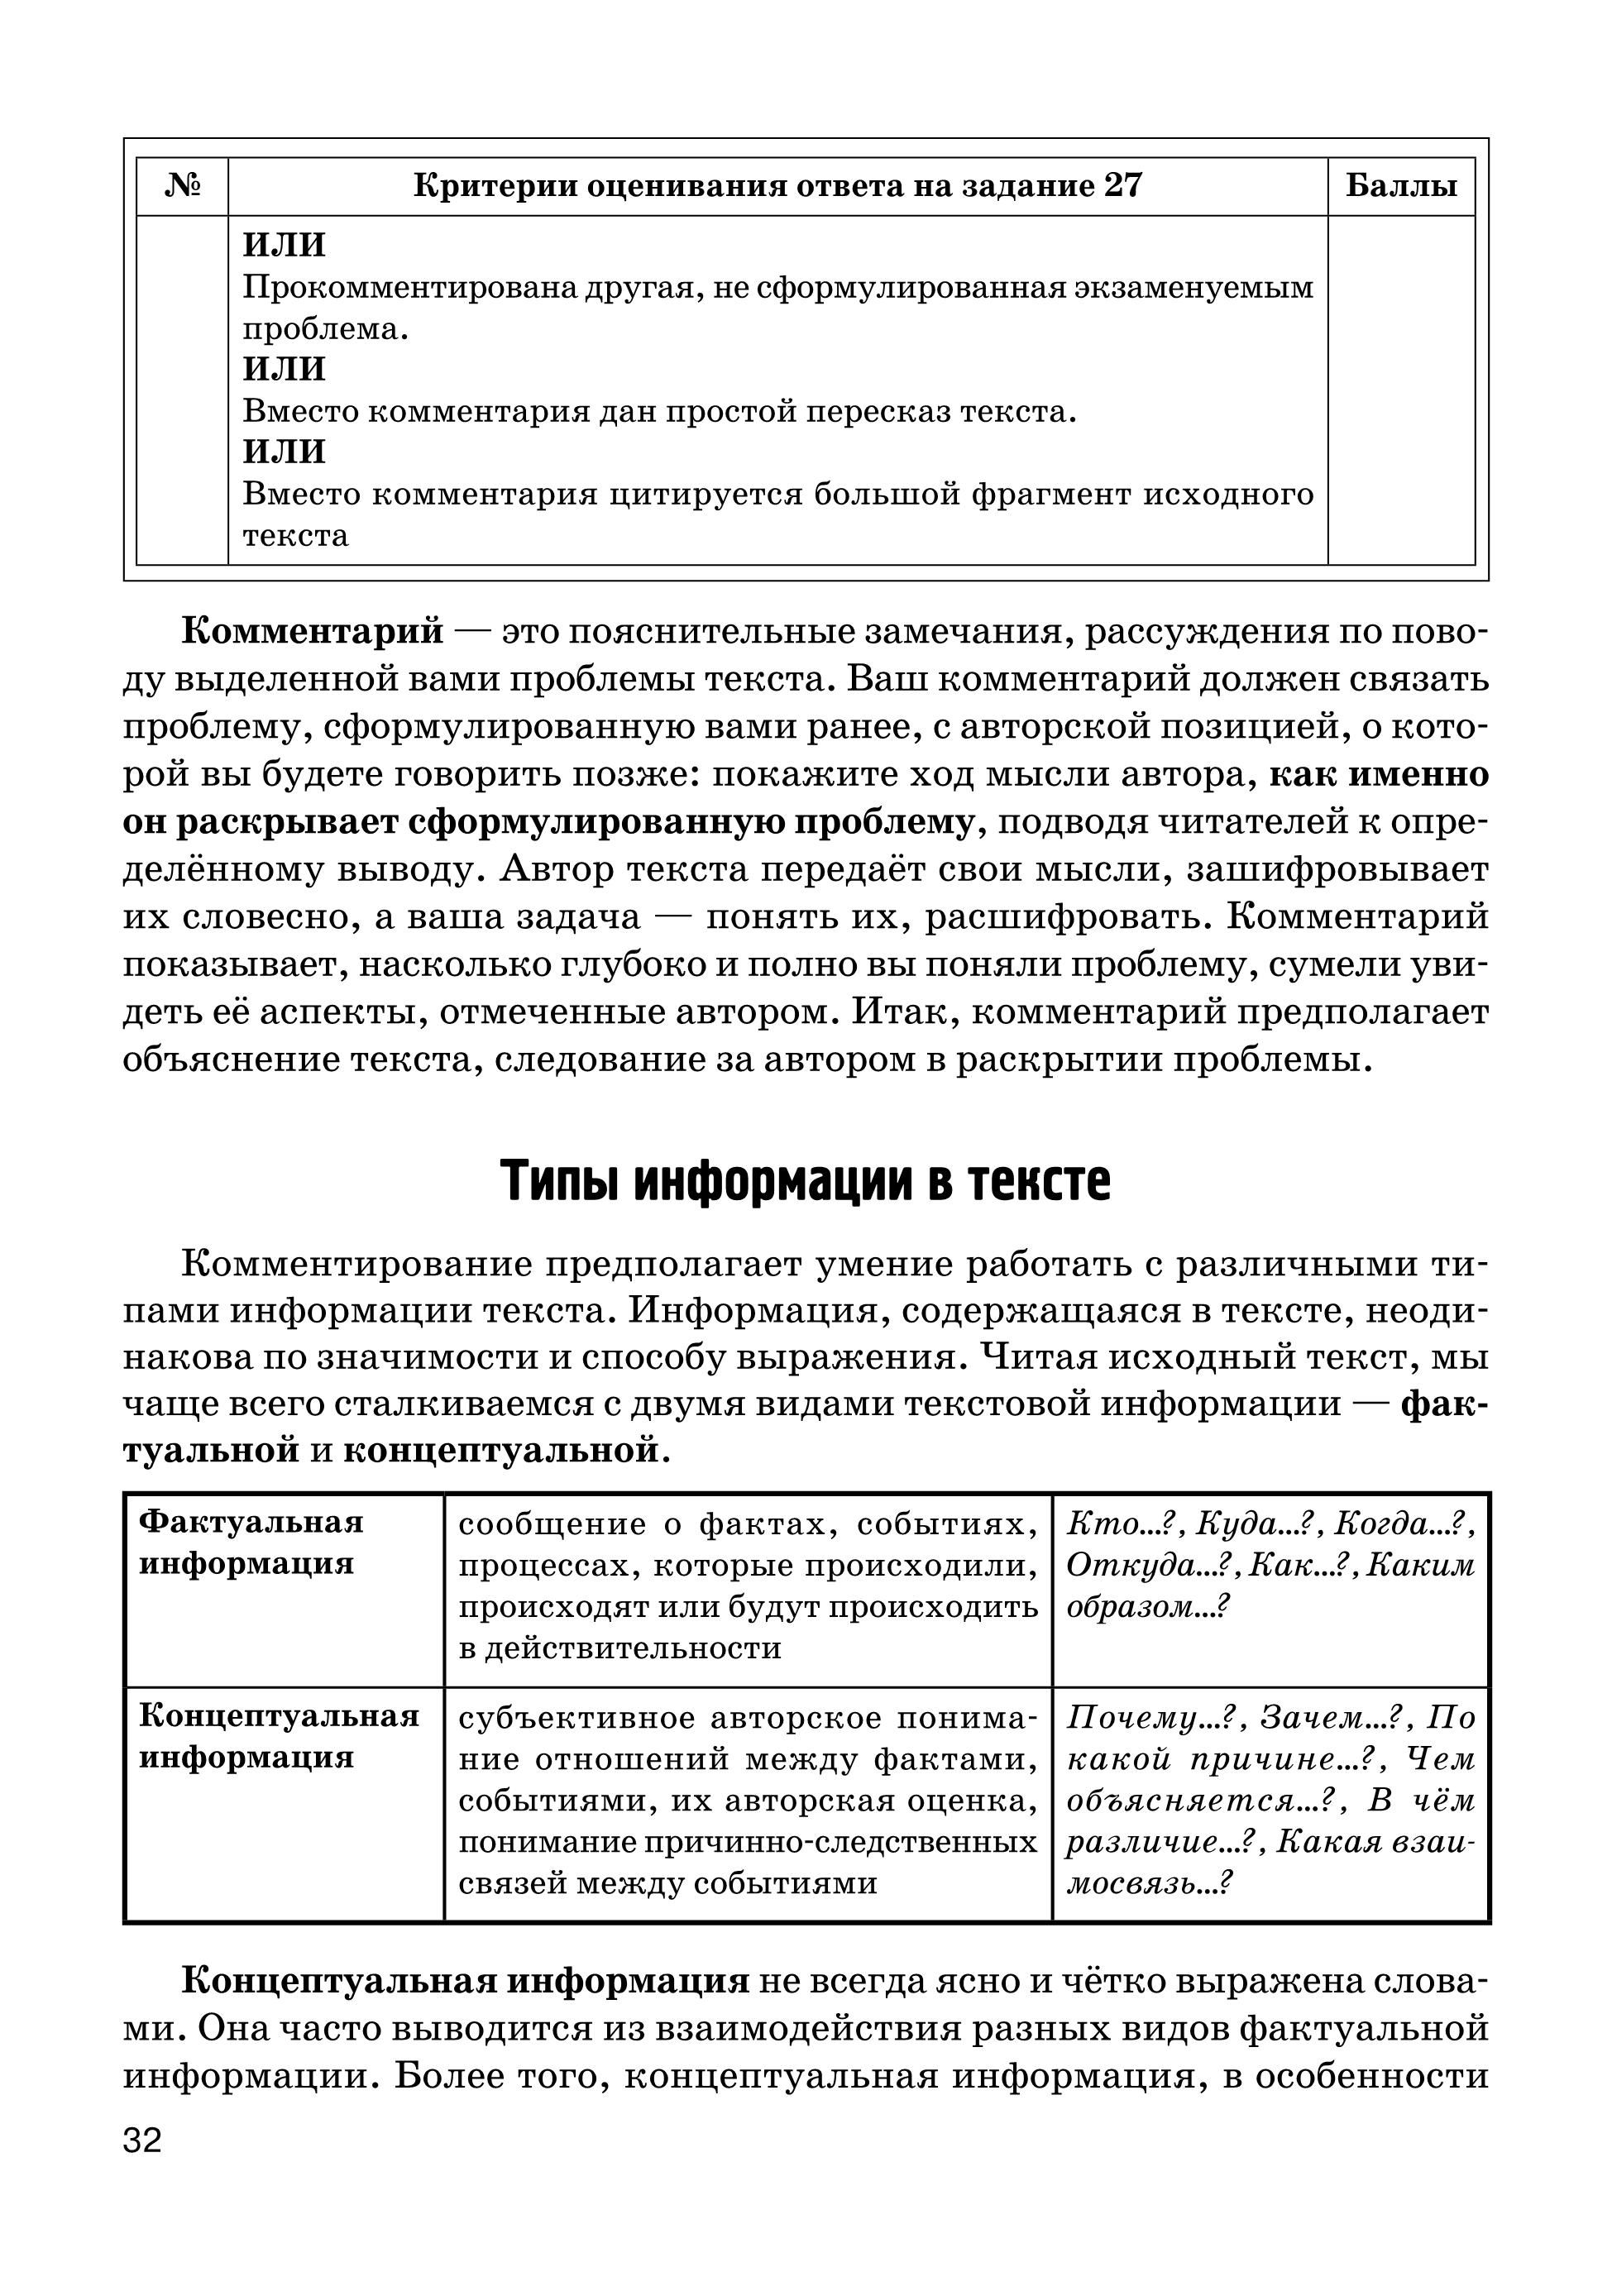 Русский язык. Сочинение на ЕГЭ. Курс интенсивной подготовки. 12-е издание